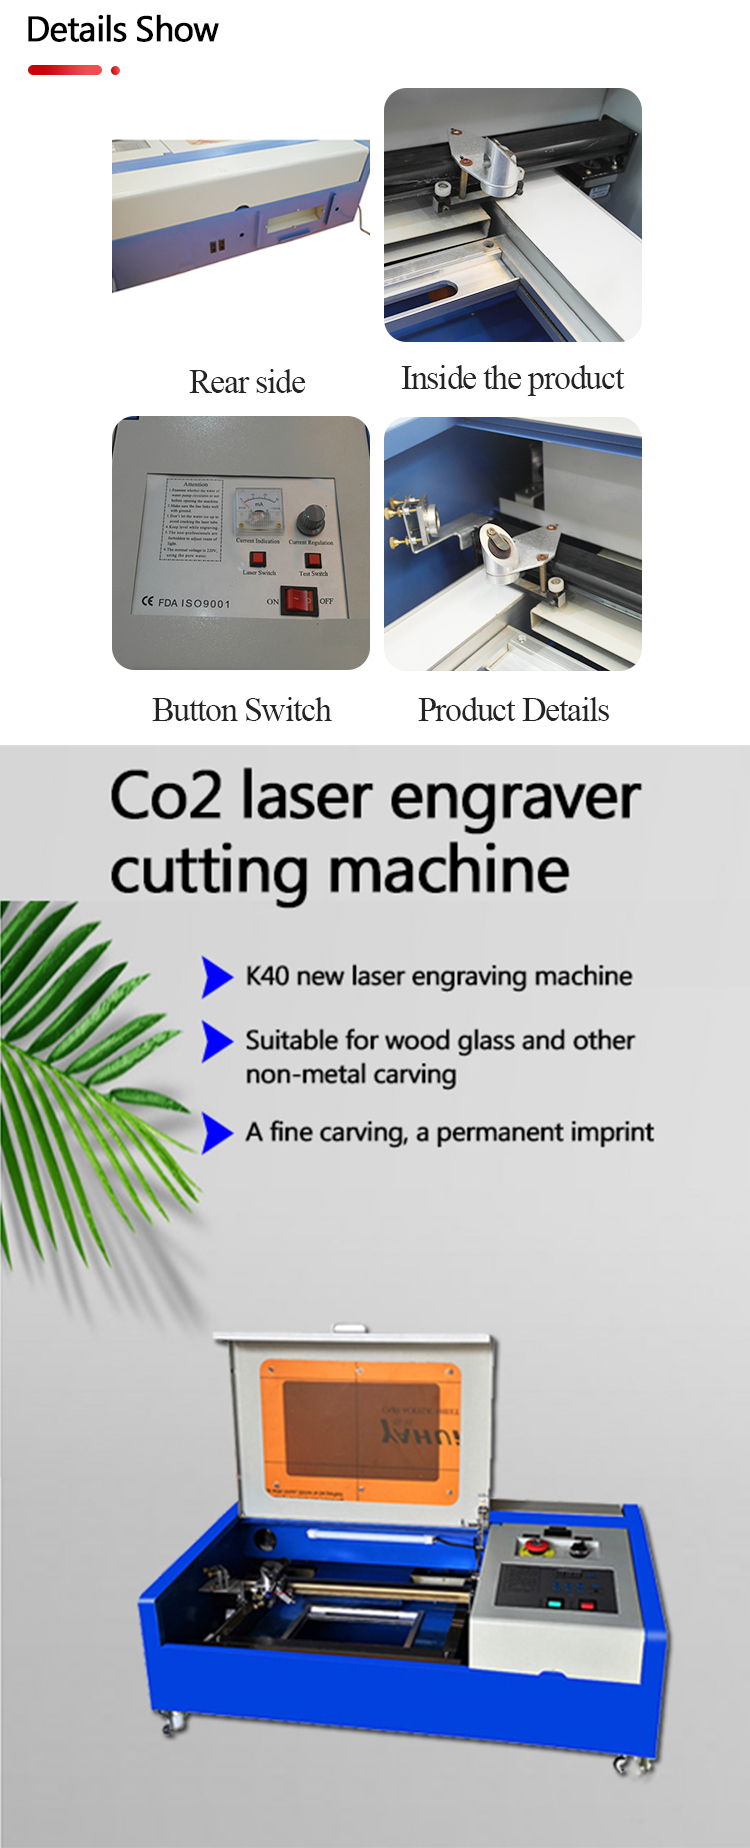 Graveur laser co2-exposition des détails